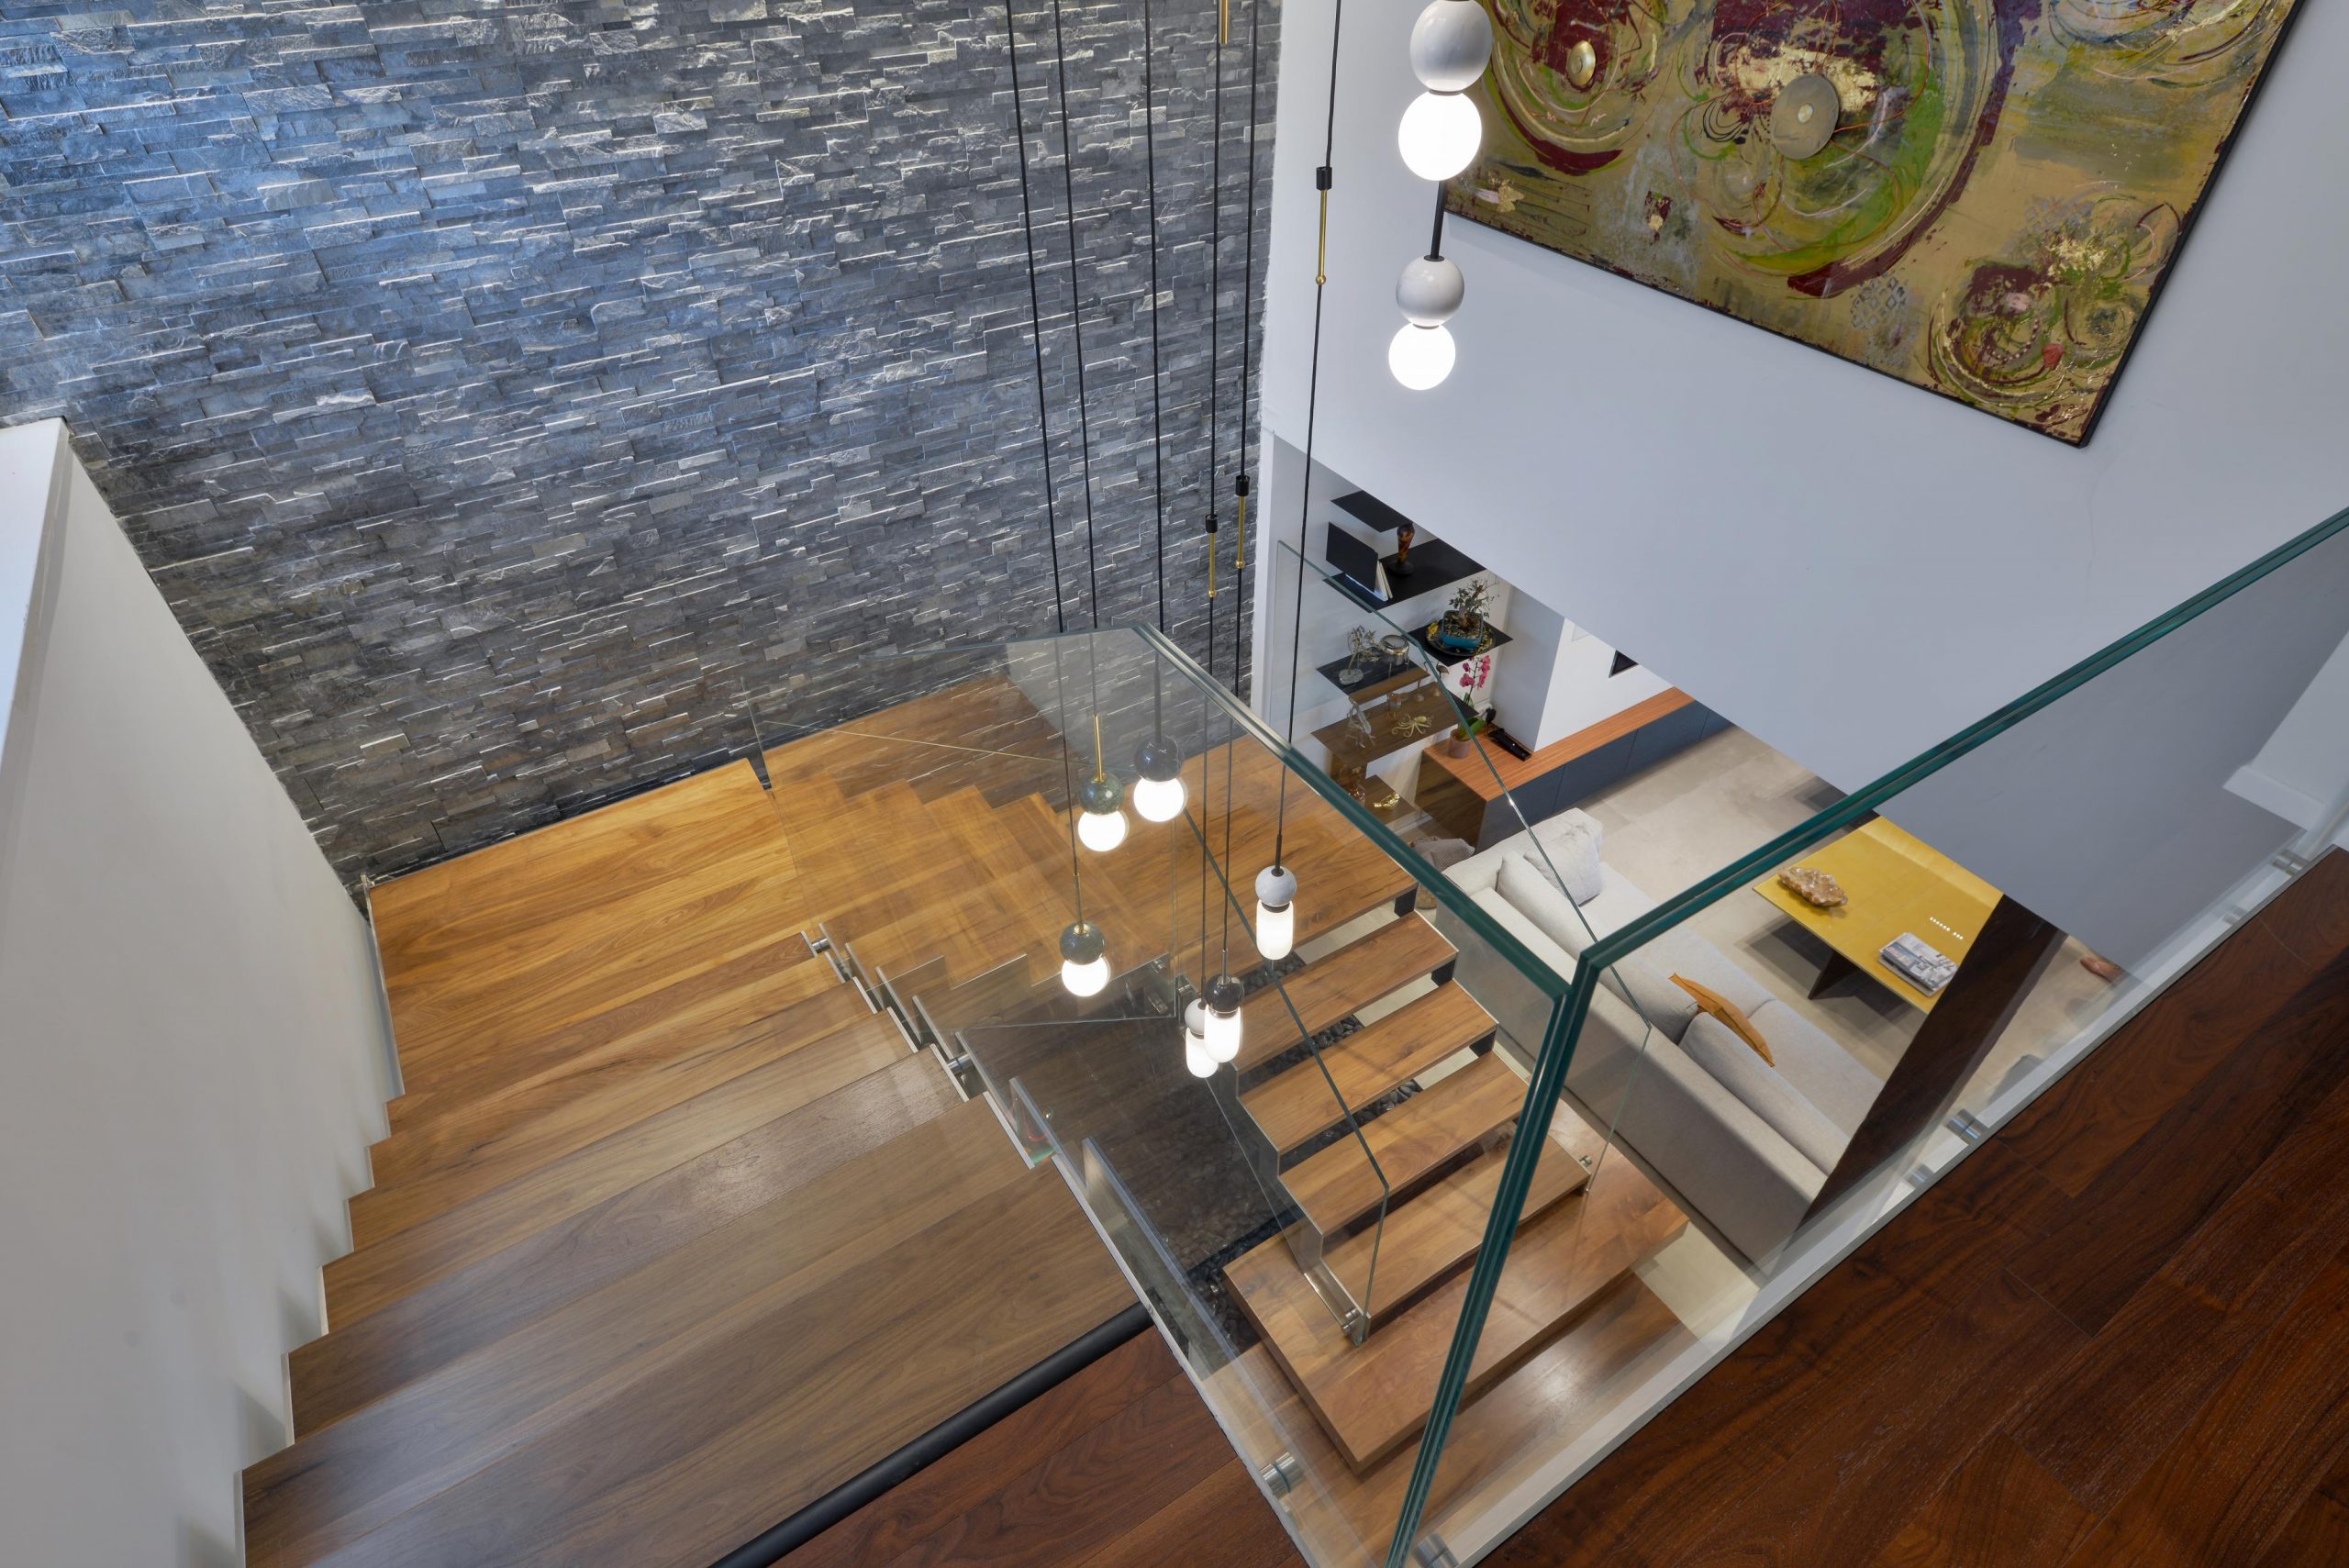 מבט מלמעלה על מדרגות עץ אגוז אמריקאי על קונסטרוקציות מנירוסטה ולצידן מעקה זכוכית אקסטרה קליר בוילה ברמלה